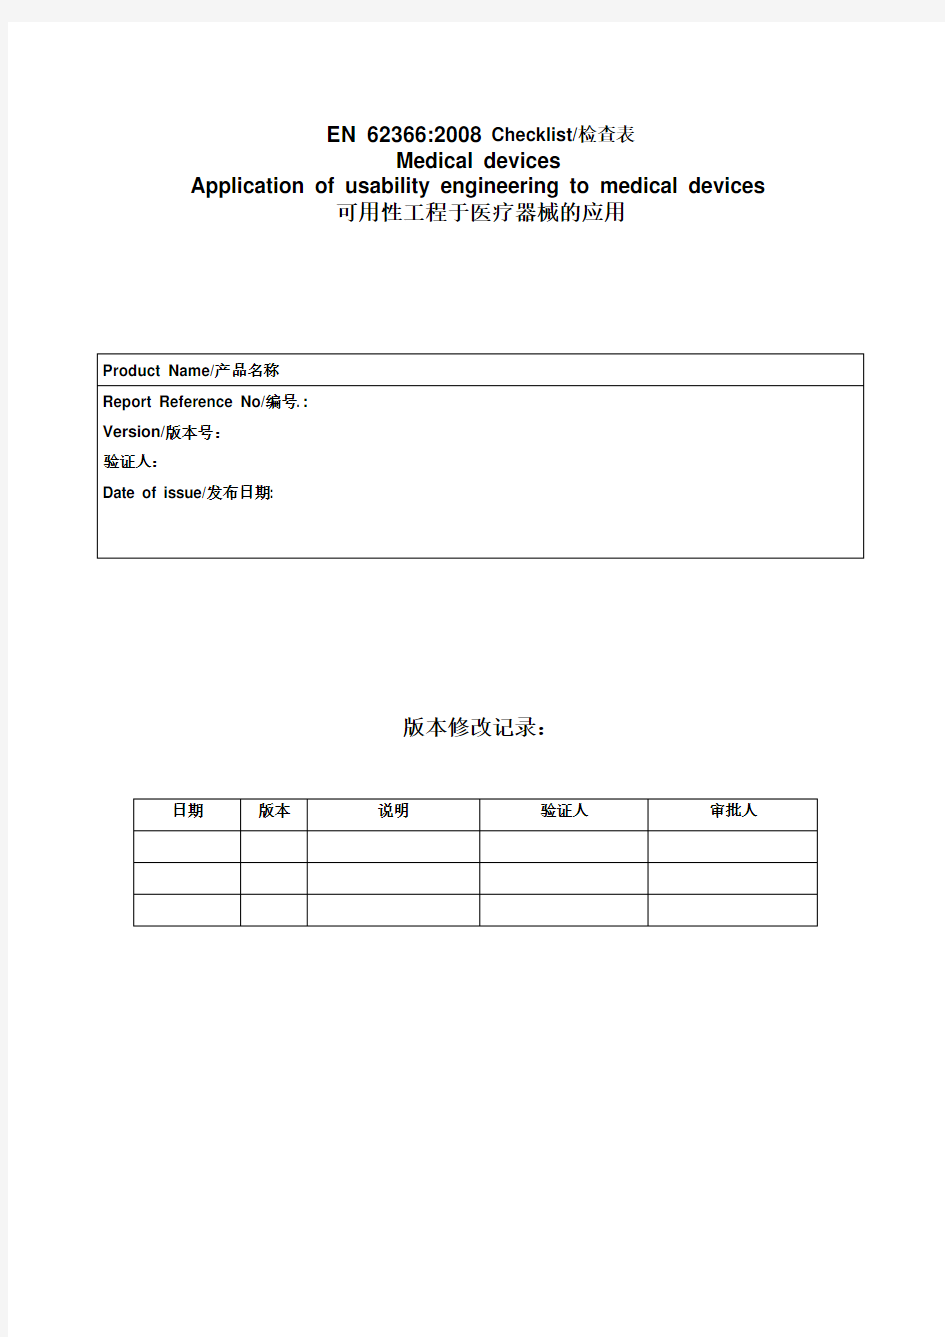 CE-可用性工程评估报告(EN-62366)